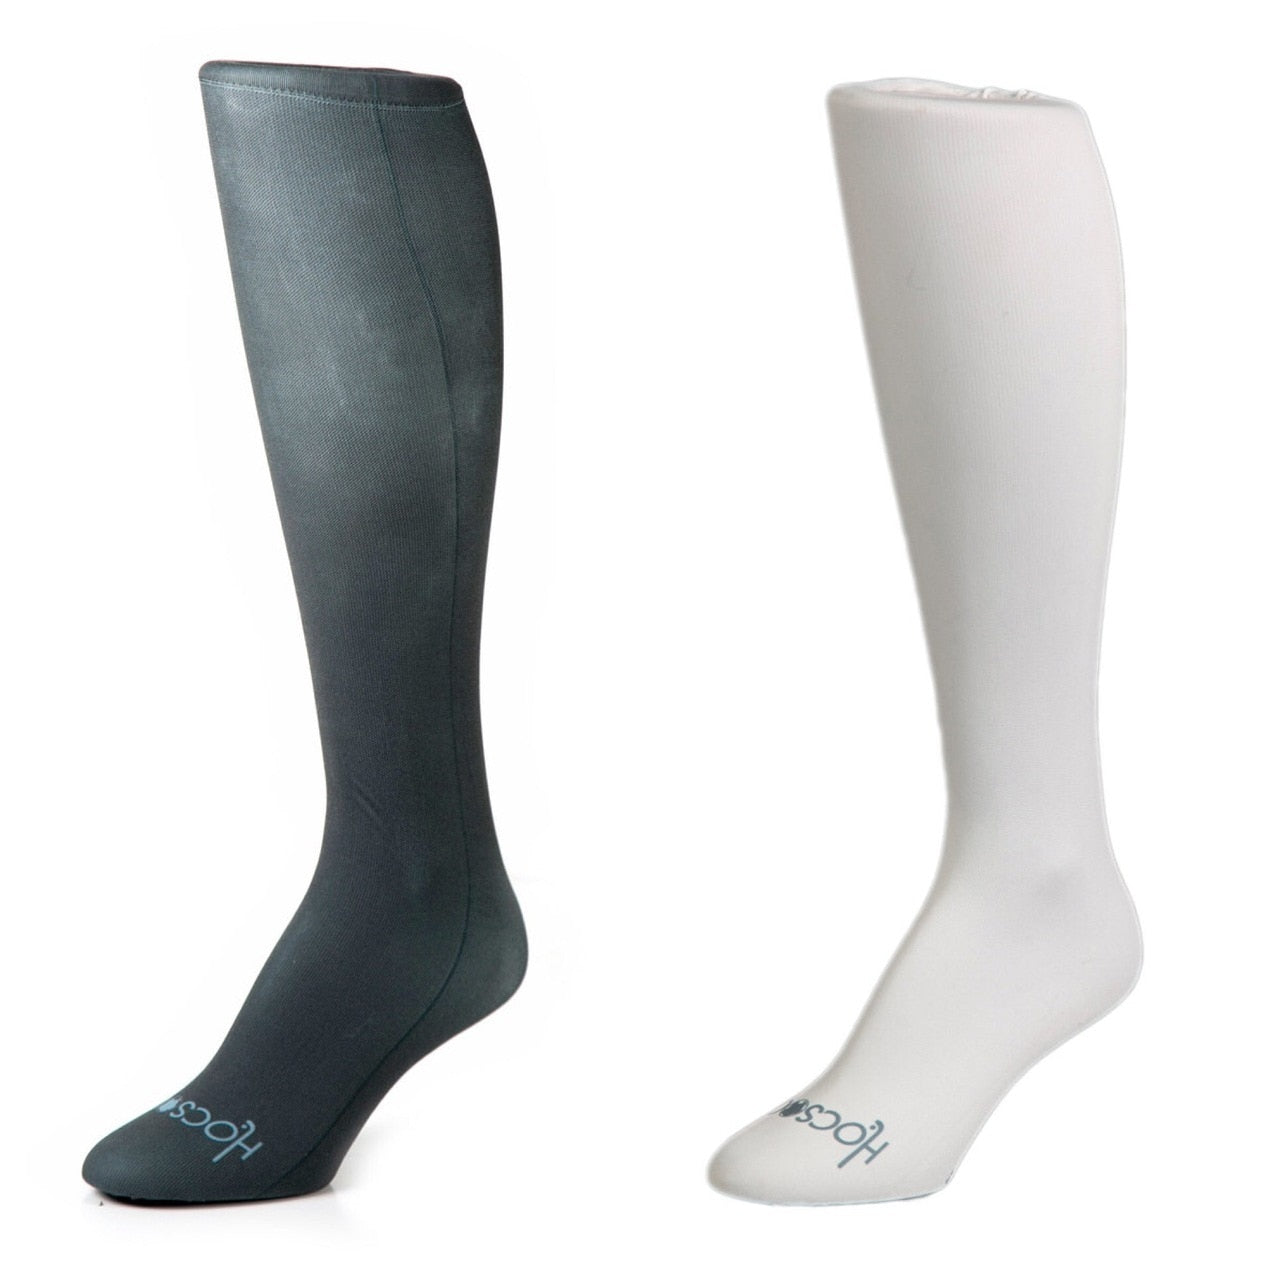 Hocsocx Charcoal & White Gift Set Liner Sport Socks